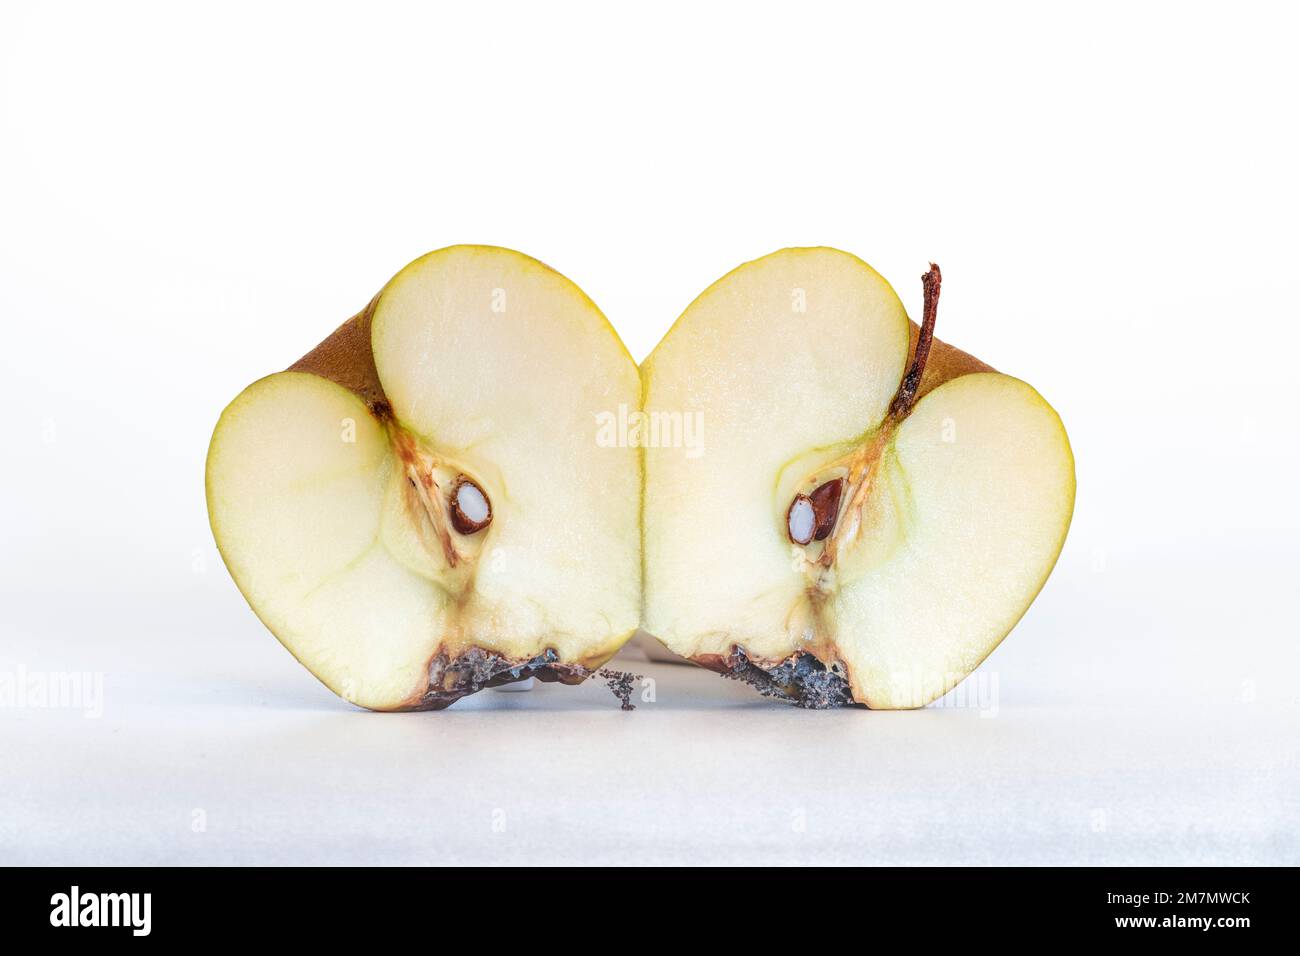 Verdorbener, dehydrierter und fauler Apfel, ein Apfel in zwei Hälften geschnitten, isoliert auf weißem Hintergrund Stockfoto